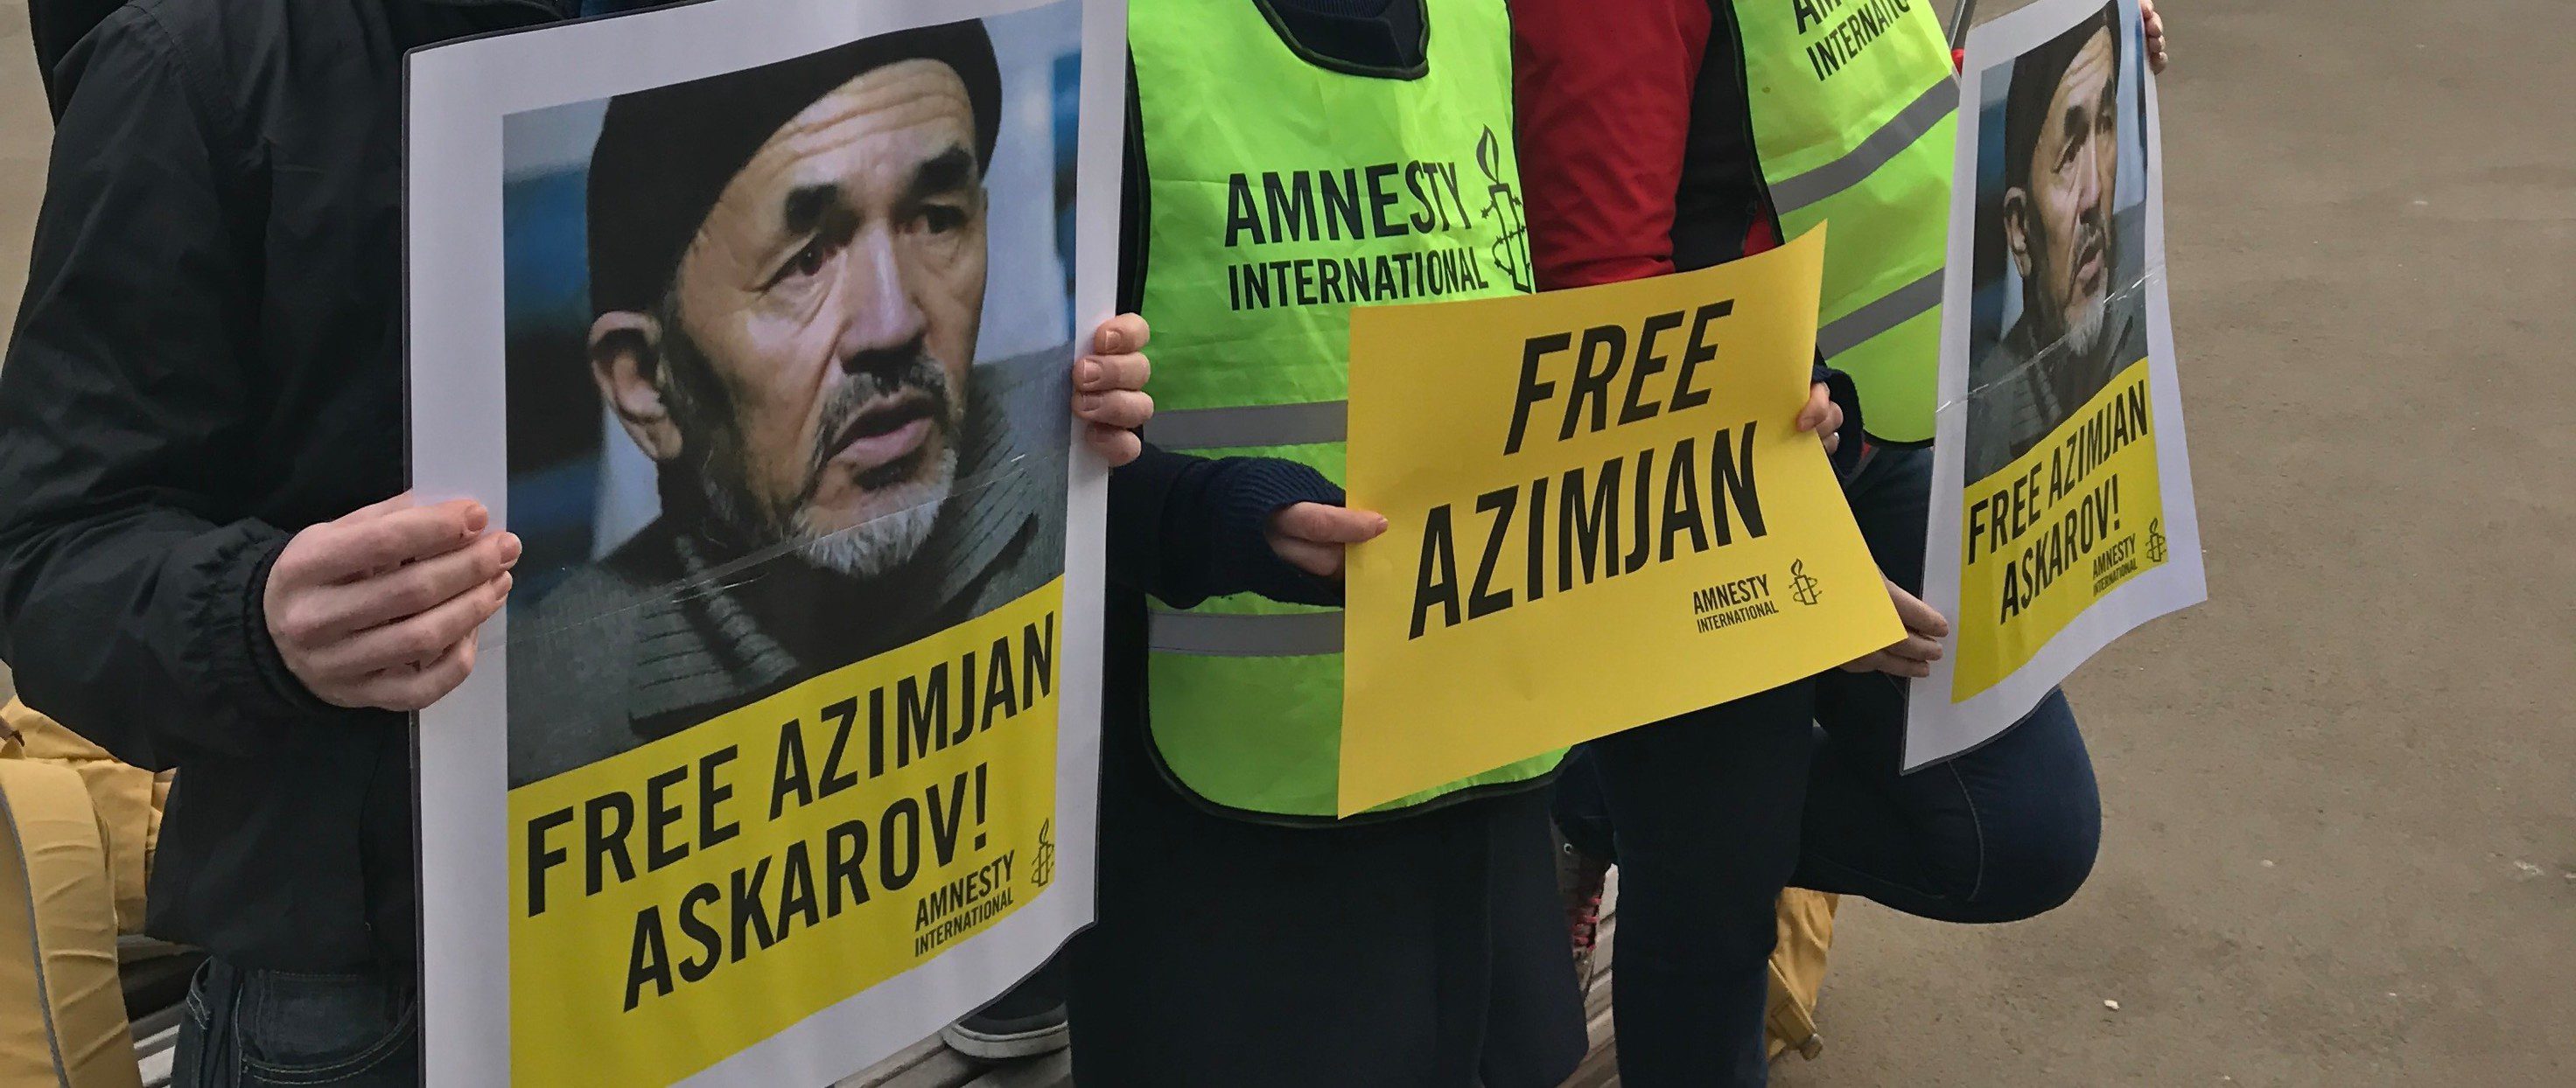 Amnesty International узник совести из Кыргызстана